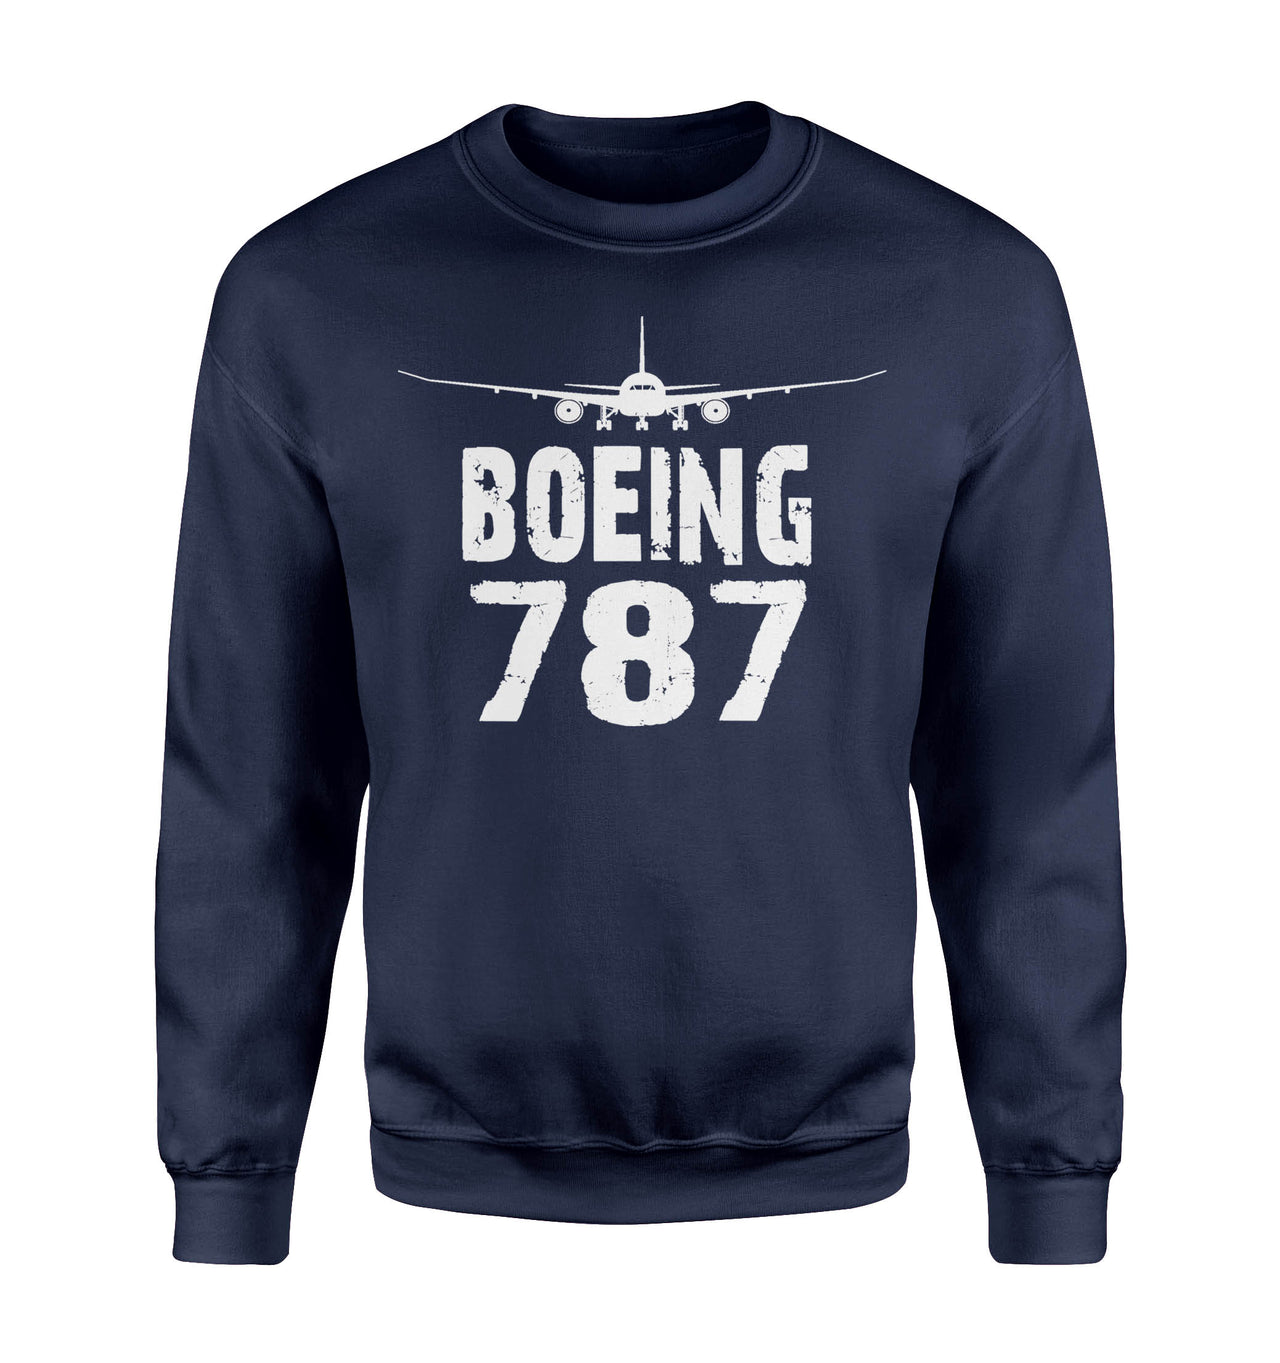 Boeing 787 & Plane Designed Sweatshirts